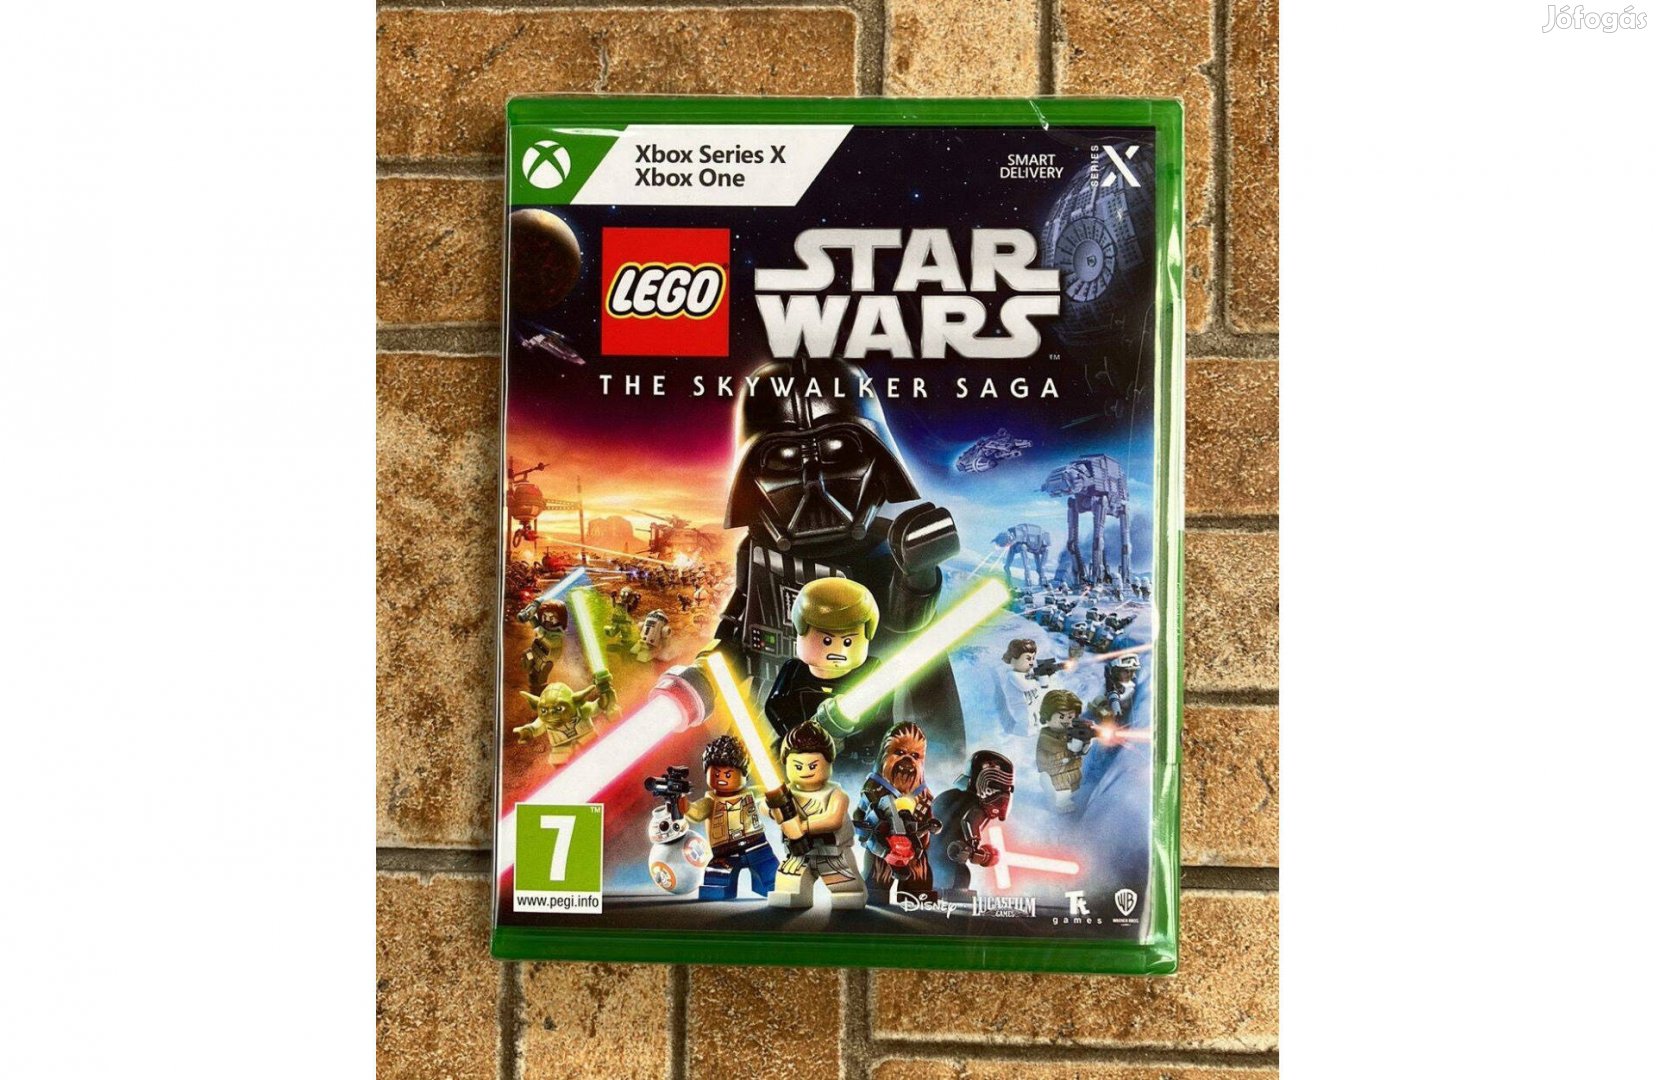 Xbox Star Wars Lego Skywalker Saga játékszoftver Bontatlan,új